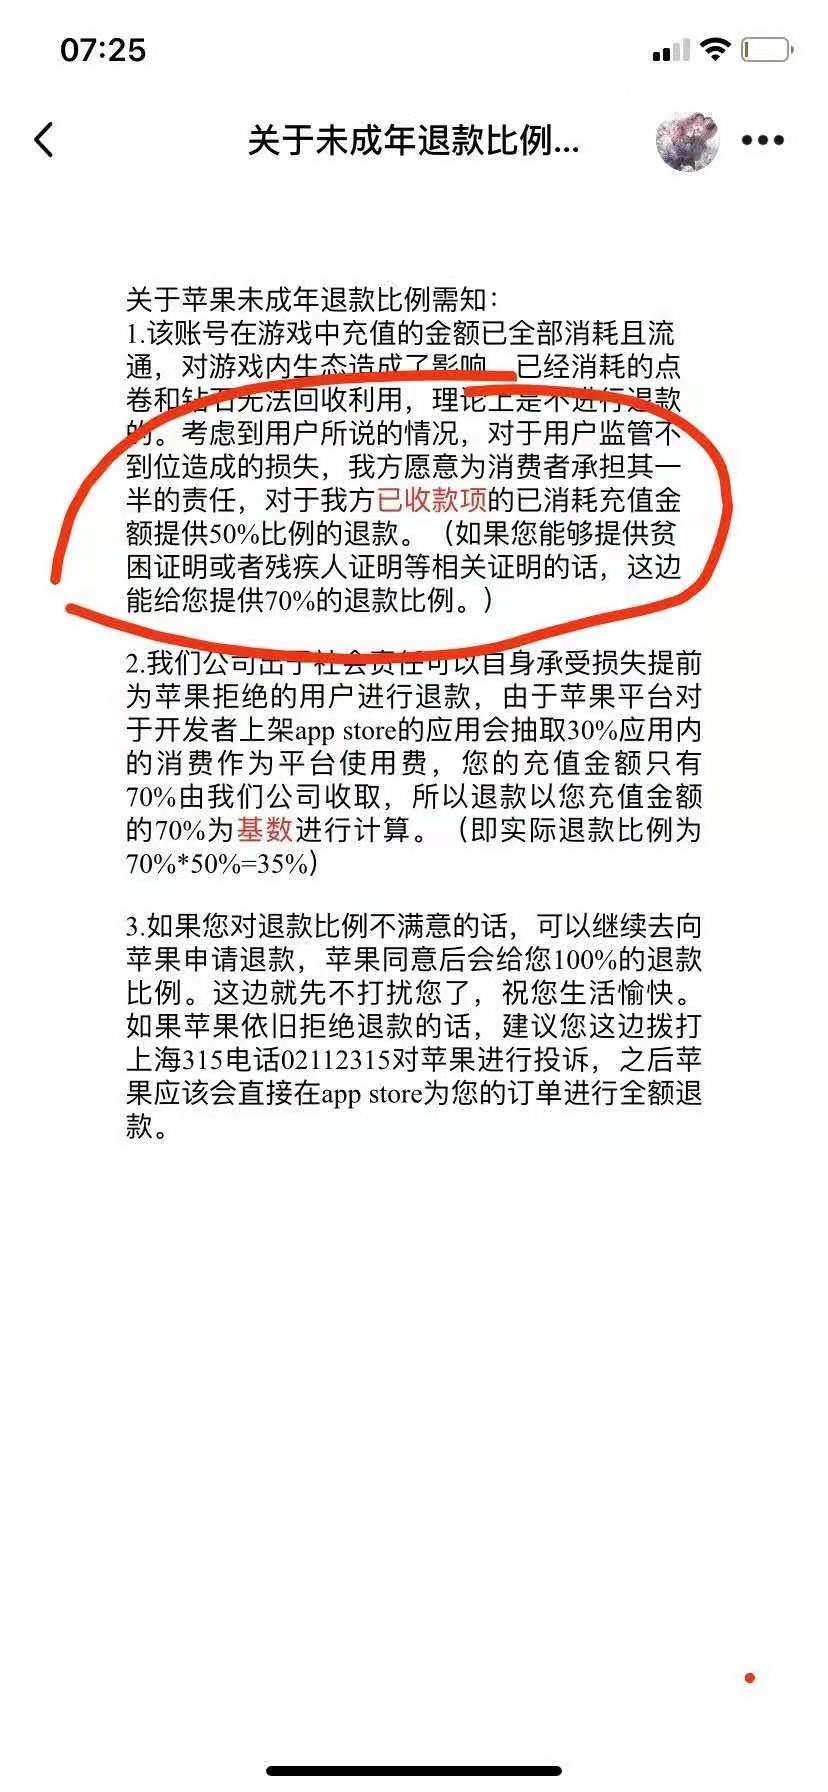 游戏《逃跑吧！少年》开放商深圳白日梦网络科技有限公司给赵女士的回信